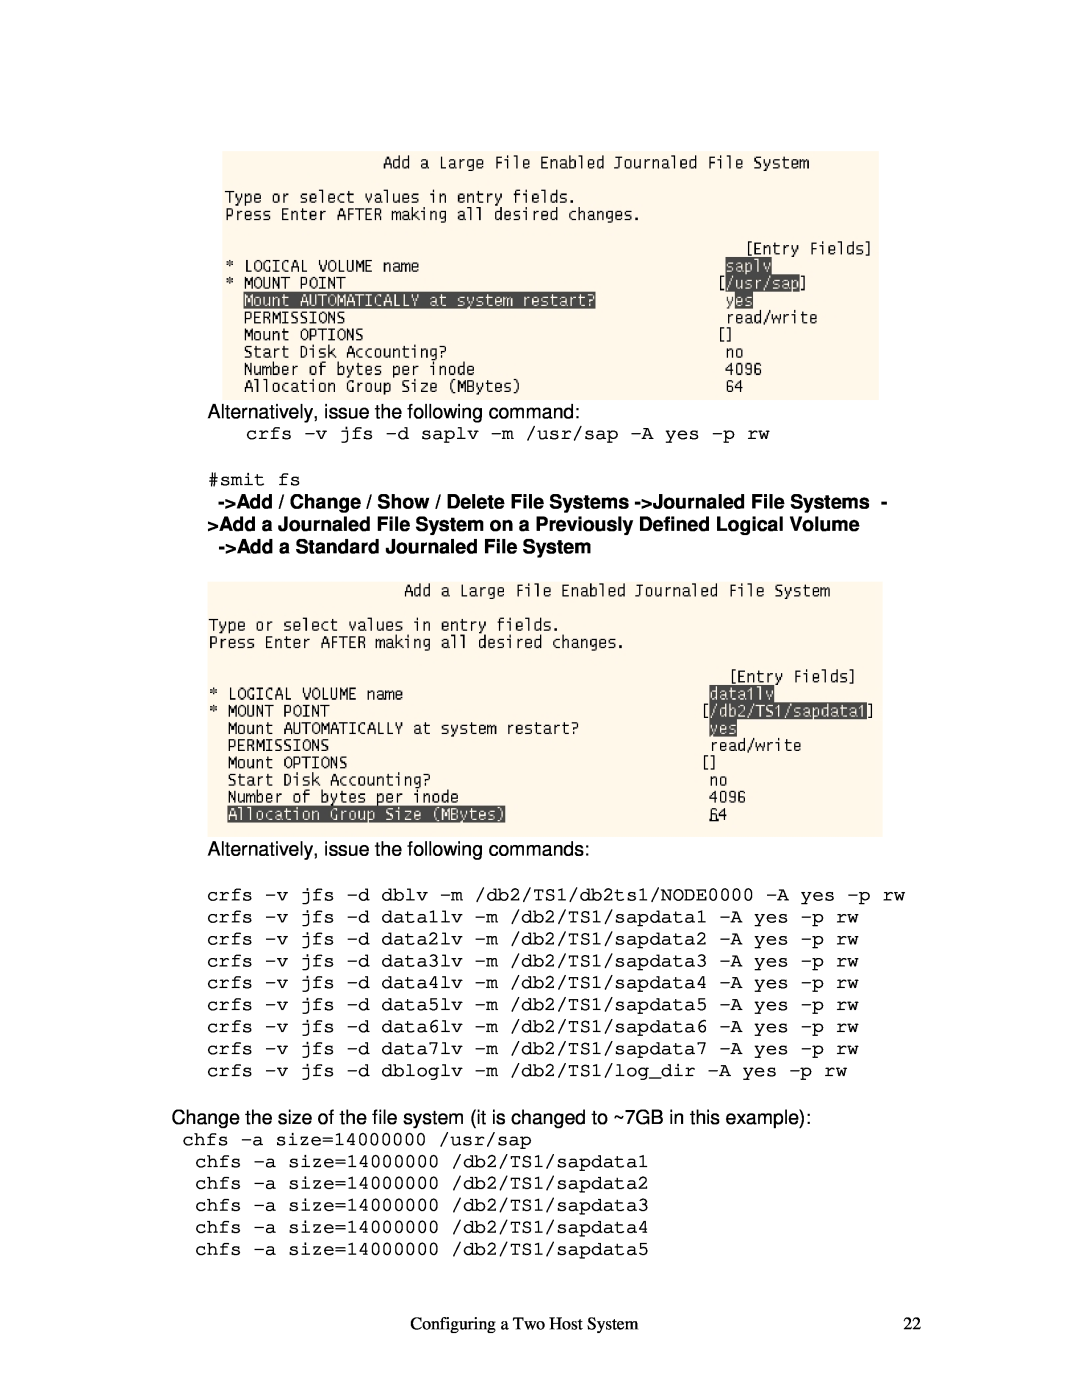 IBM V7.2 manual crfs -v jfs -d saplv -m /usr/sap -A yes -p rw #smit fs, Add a Standard Journaled File System 